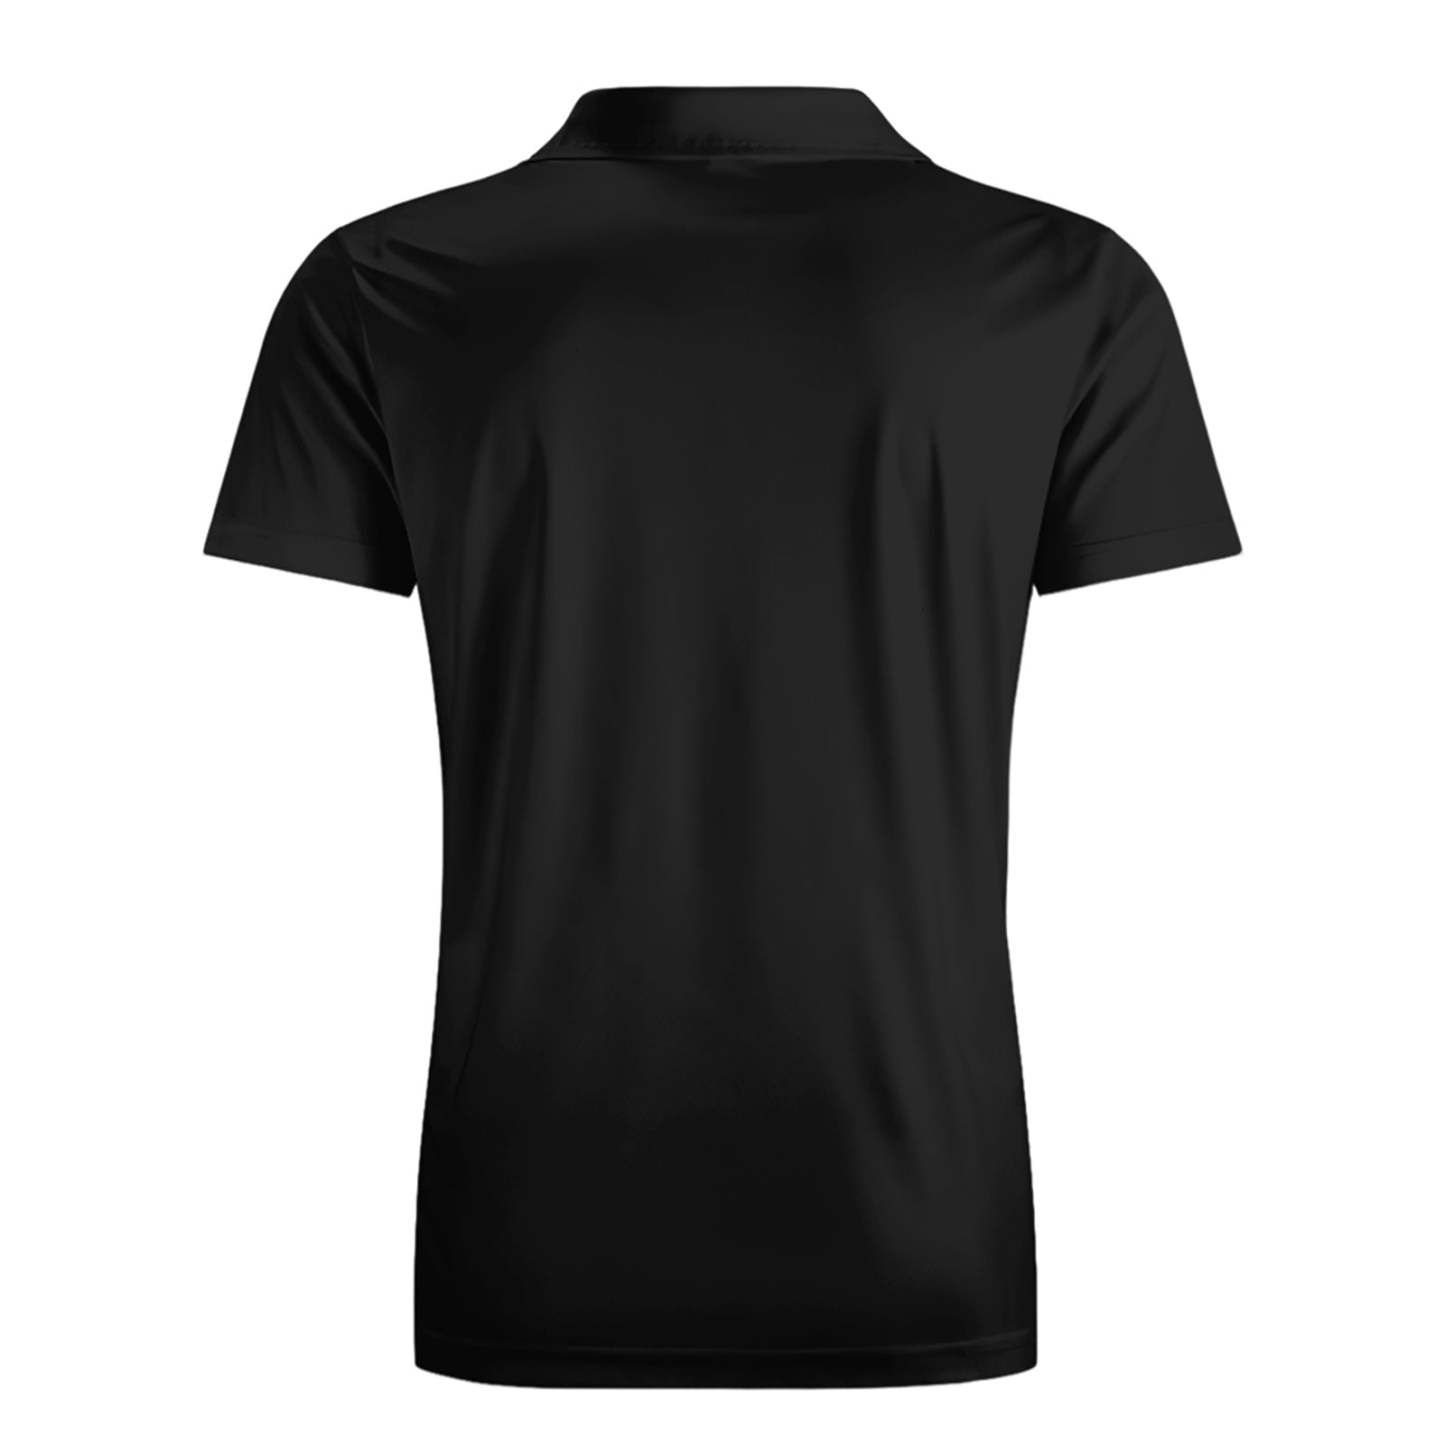 Custom Face Polo Shirt For Men Hole In One Golf Polo Shirt Gift For Golfer - FaceBoxerUK